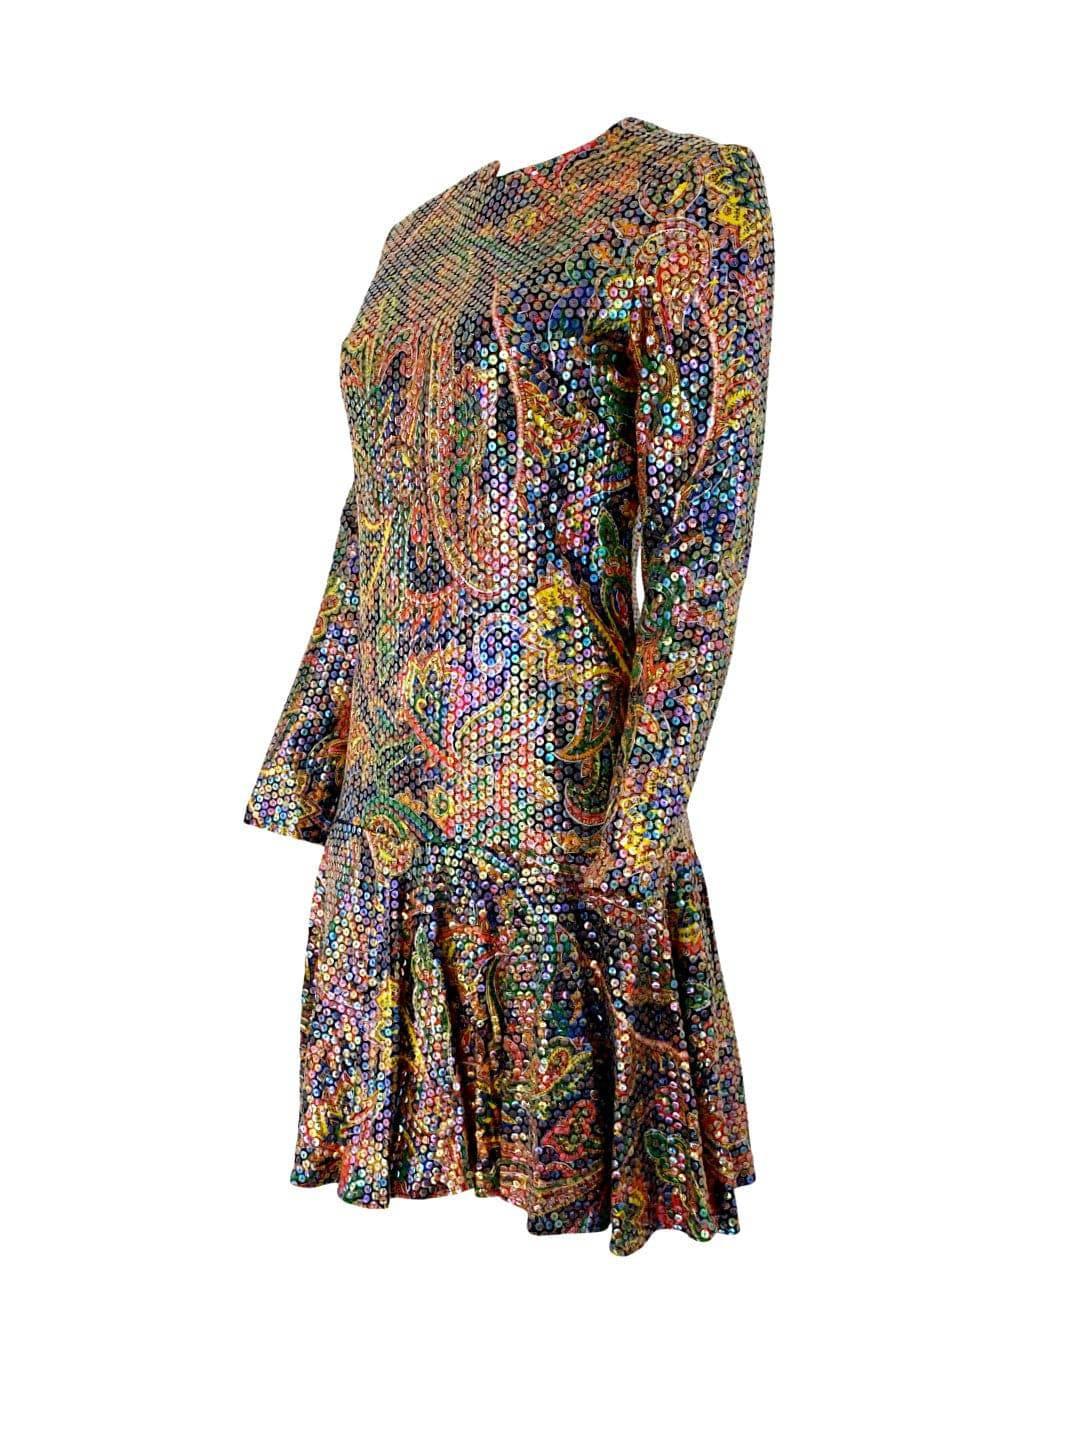 So ein tolles Cocktail-Kleid! Dieses Vintage-Kleid des Designers Bob Bugnand aus den späten 1960er Jahren ist eine wahre Farbexplosion. Der mehrfarbige Stoff mit indischem Paisleymuster ist vollständig mit transparenten, schillernden